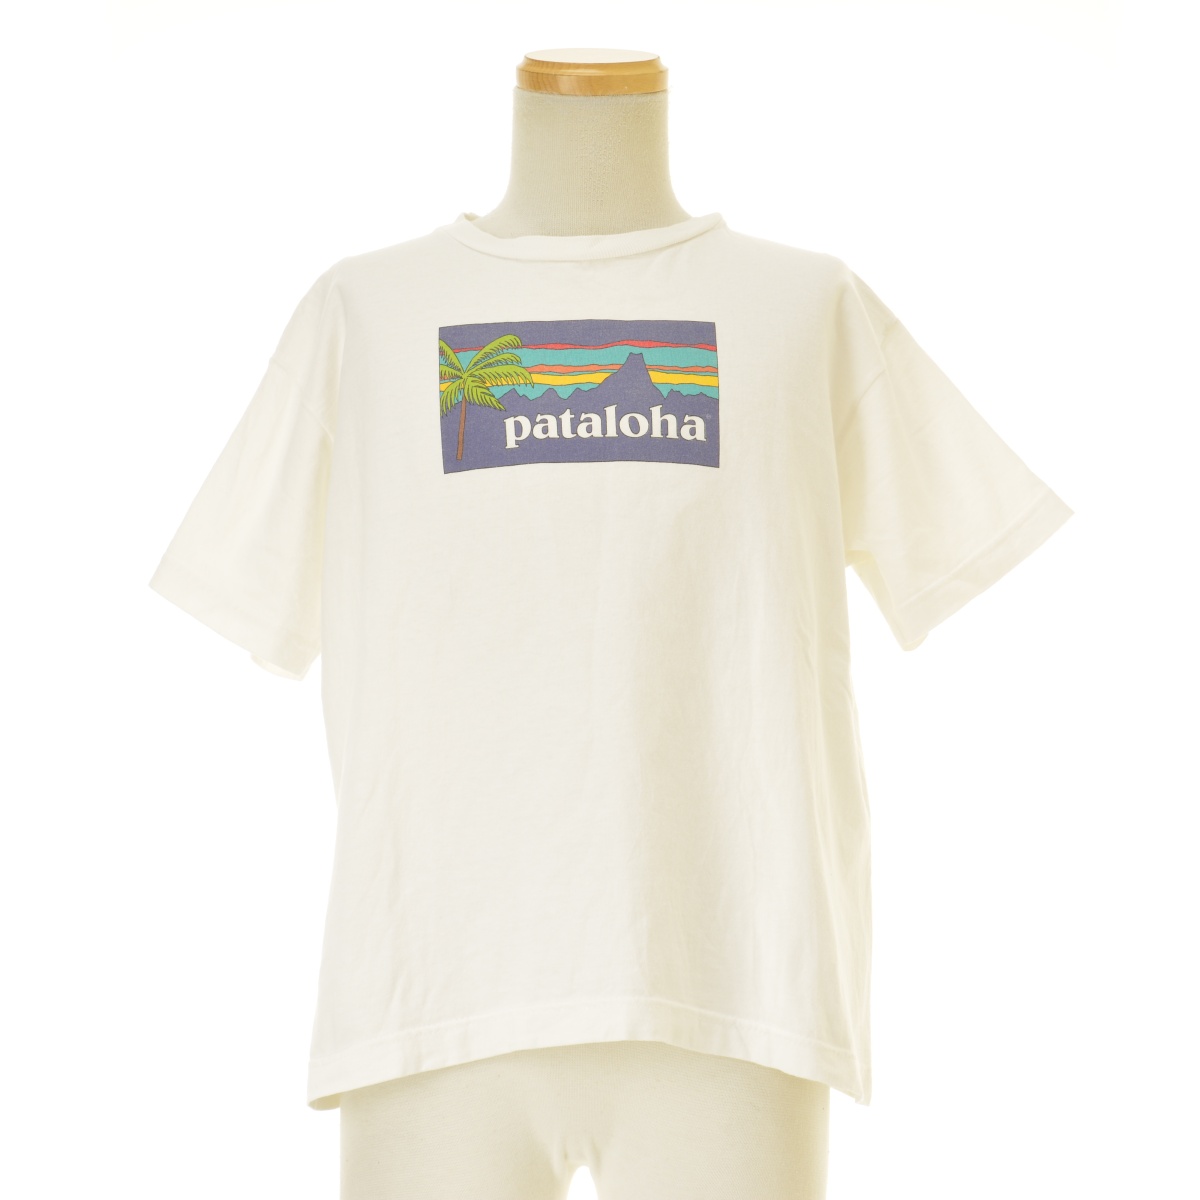 PATAGONIA / パタゴニア 90s USA製 Beneficial T's オーガニックコットン PATALOHA パタロハ 半袖Tシャツ  -ブランド古着の買取販売カンフル